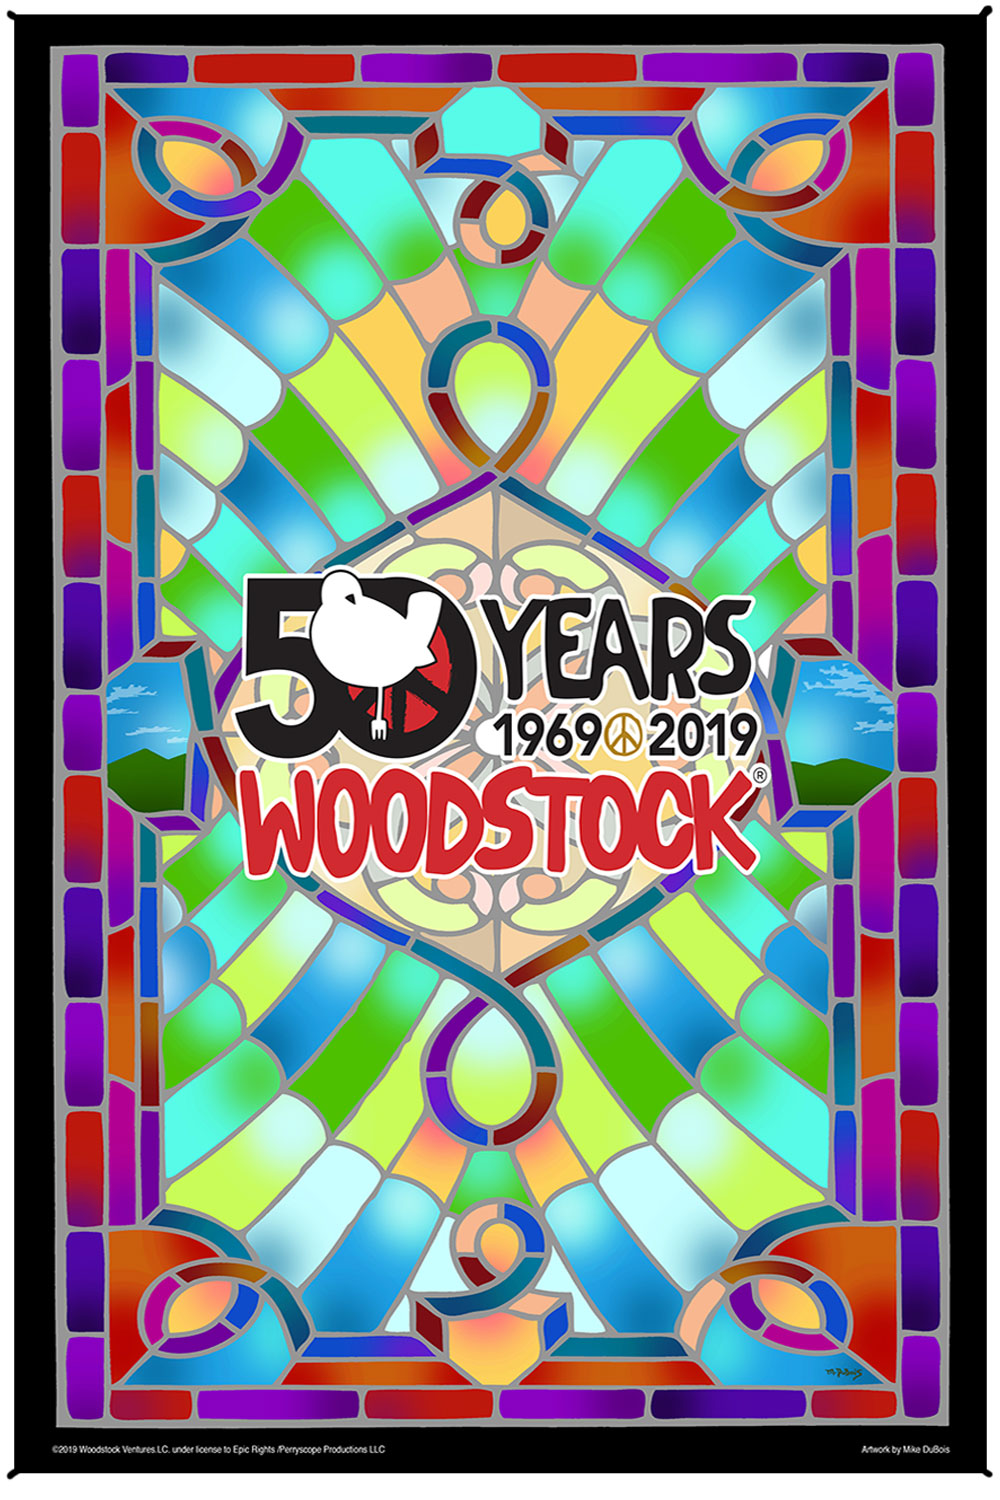 ウッドストック ステンドグラス 50周年記念 頭がくらくらするアートプリントタペストリー 53インチ x 85インチ 無料の3-Dメガネ付き 